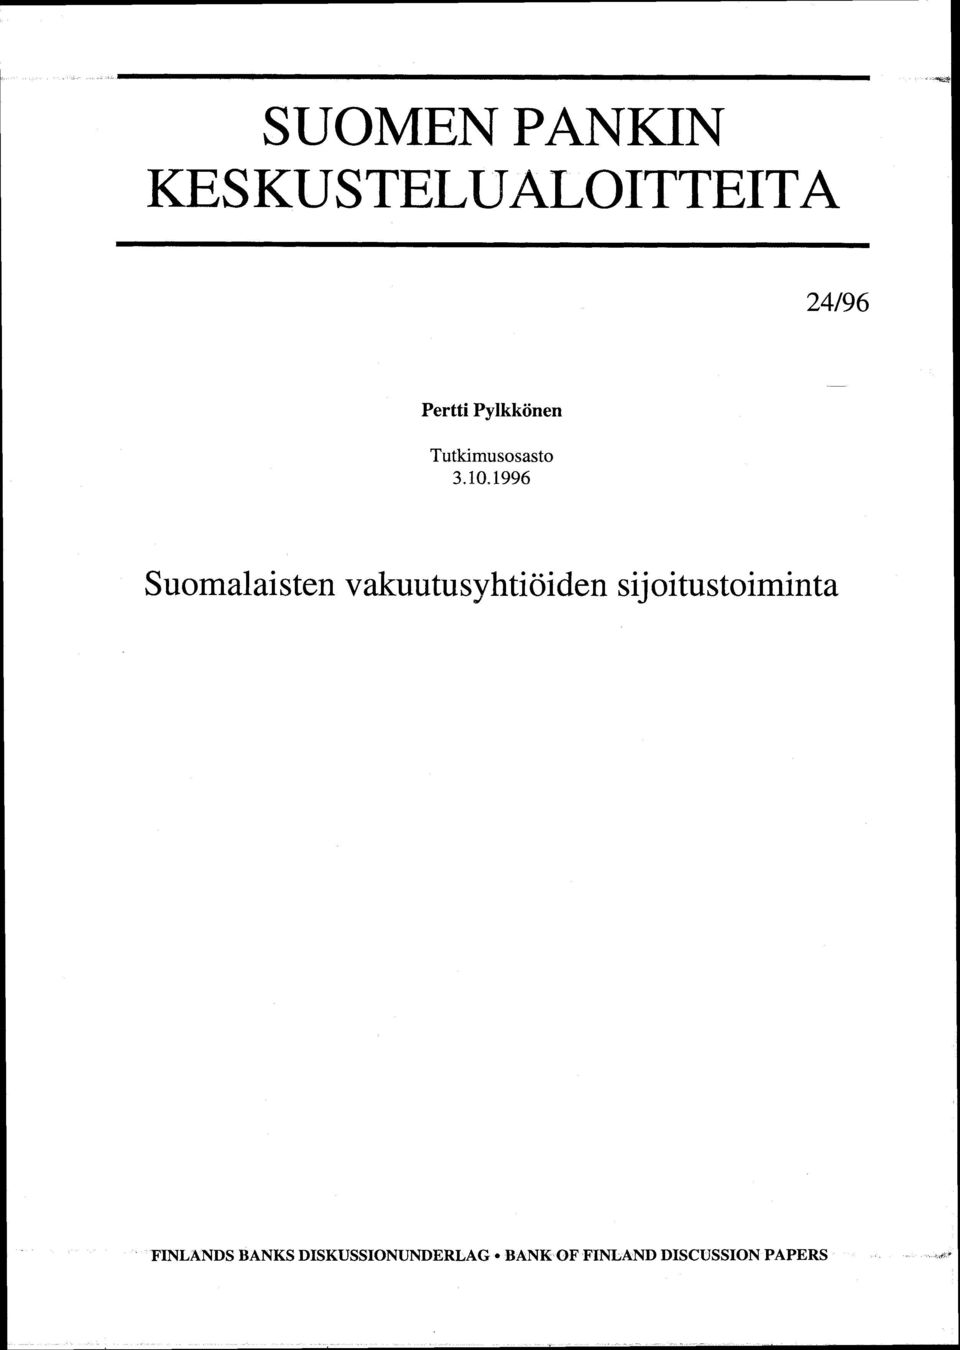 1996 Suomalaisten vakuutusyhtiöiden